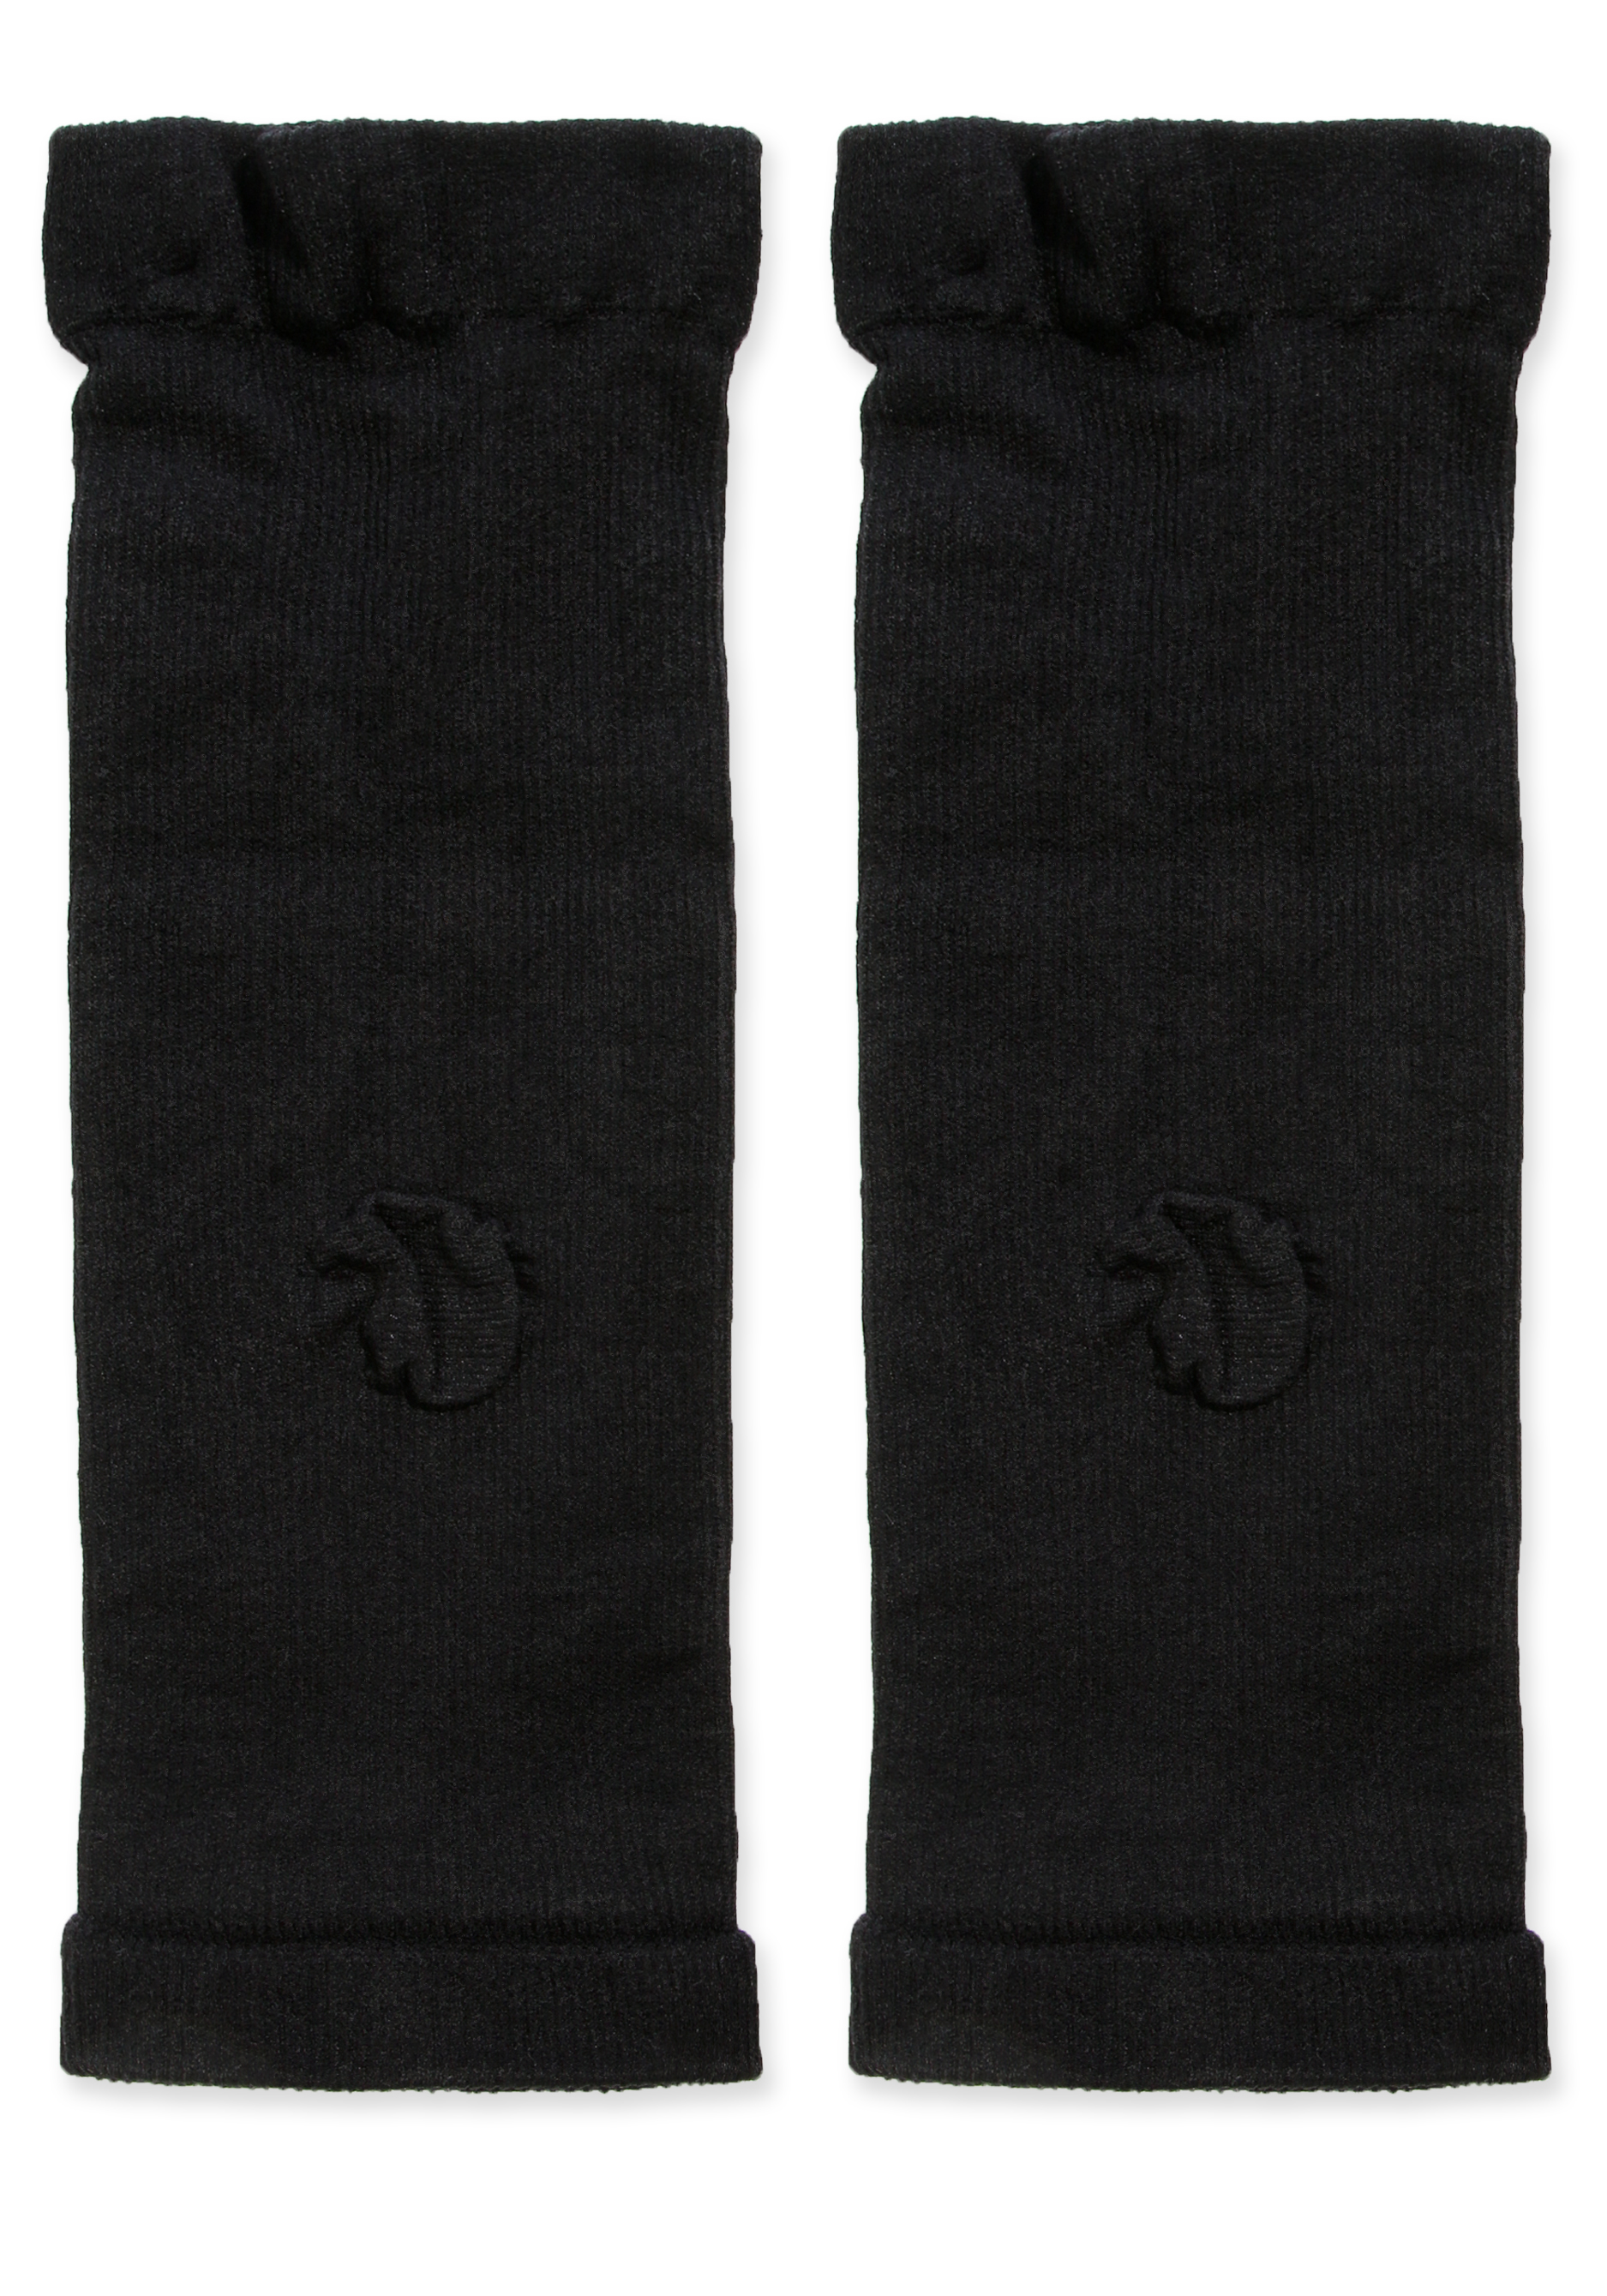 Бандаж коленного сустава, 2 шт. Filorosso, цвет черный, размер 2